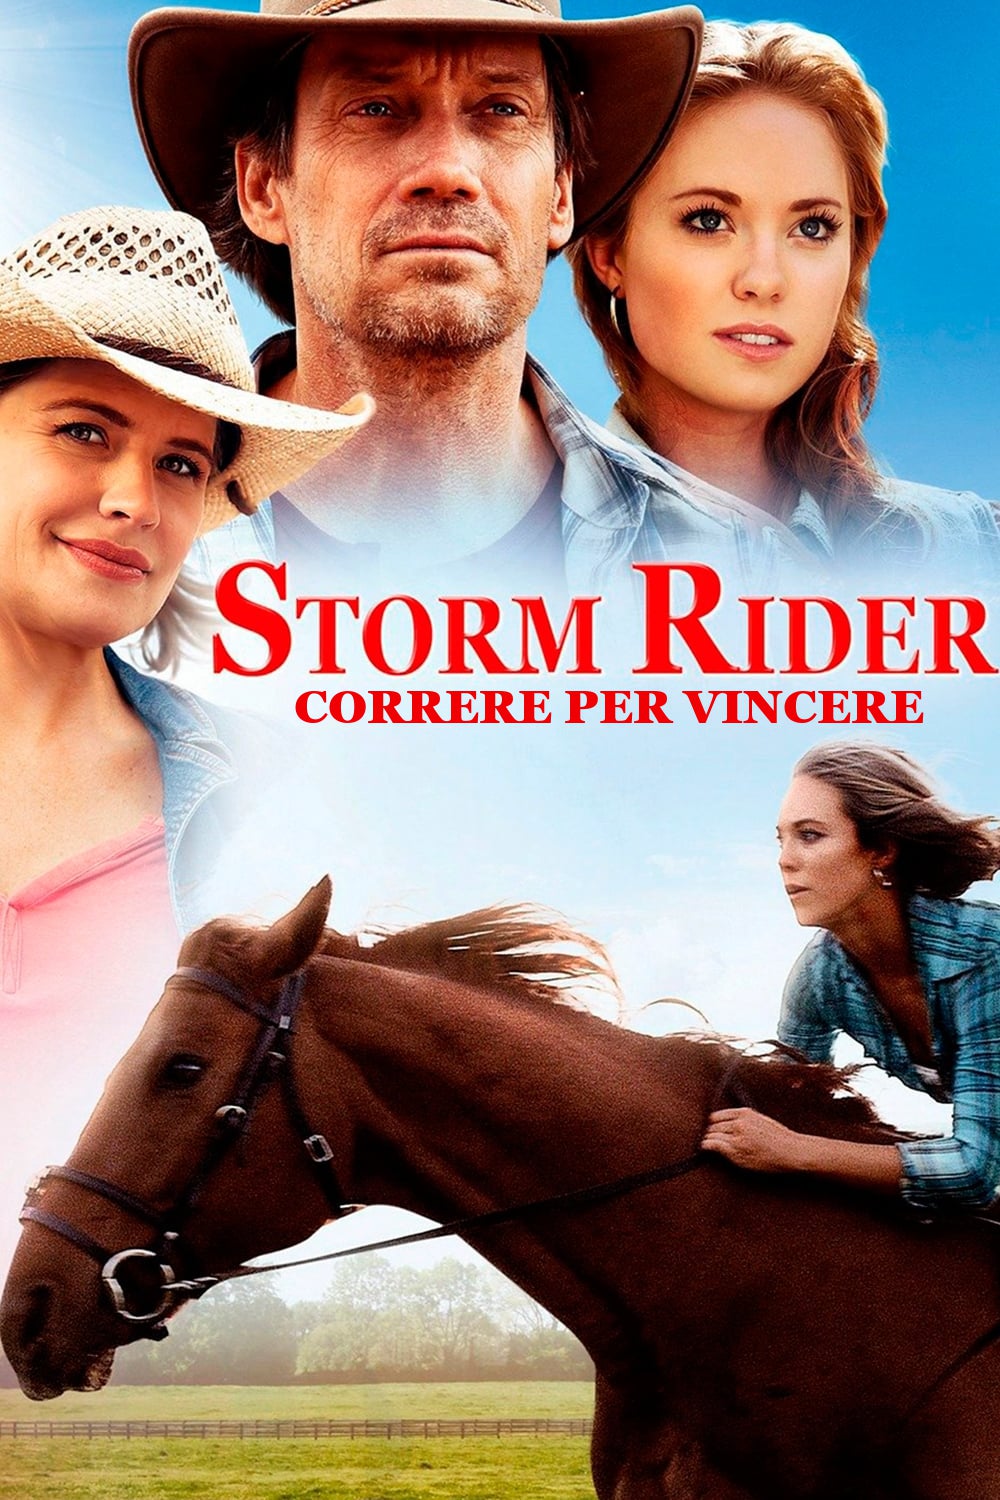 Storm Rider – Correre per vincere [HD] (2013)